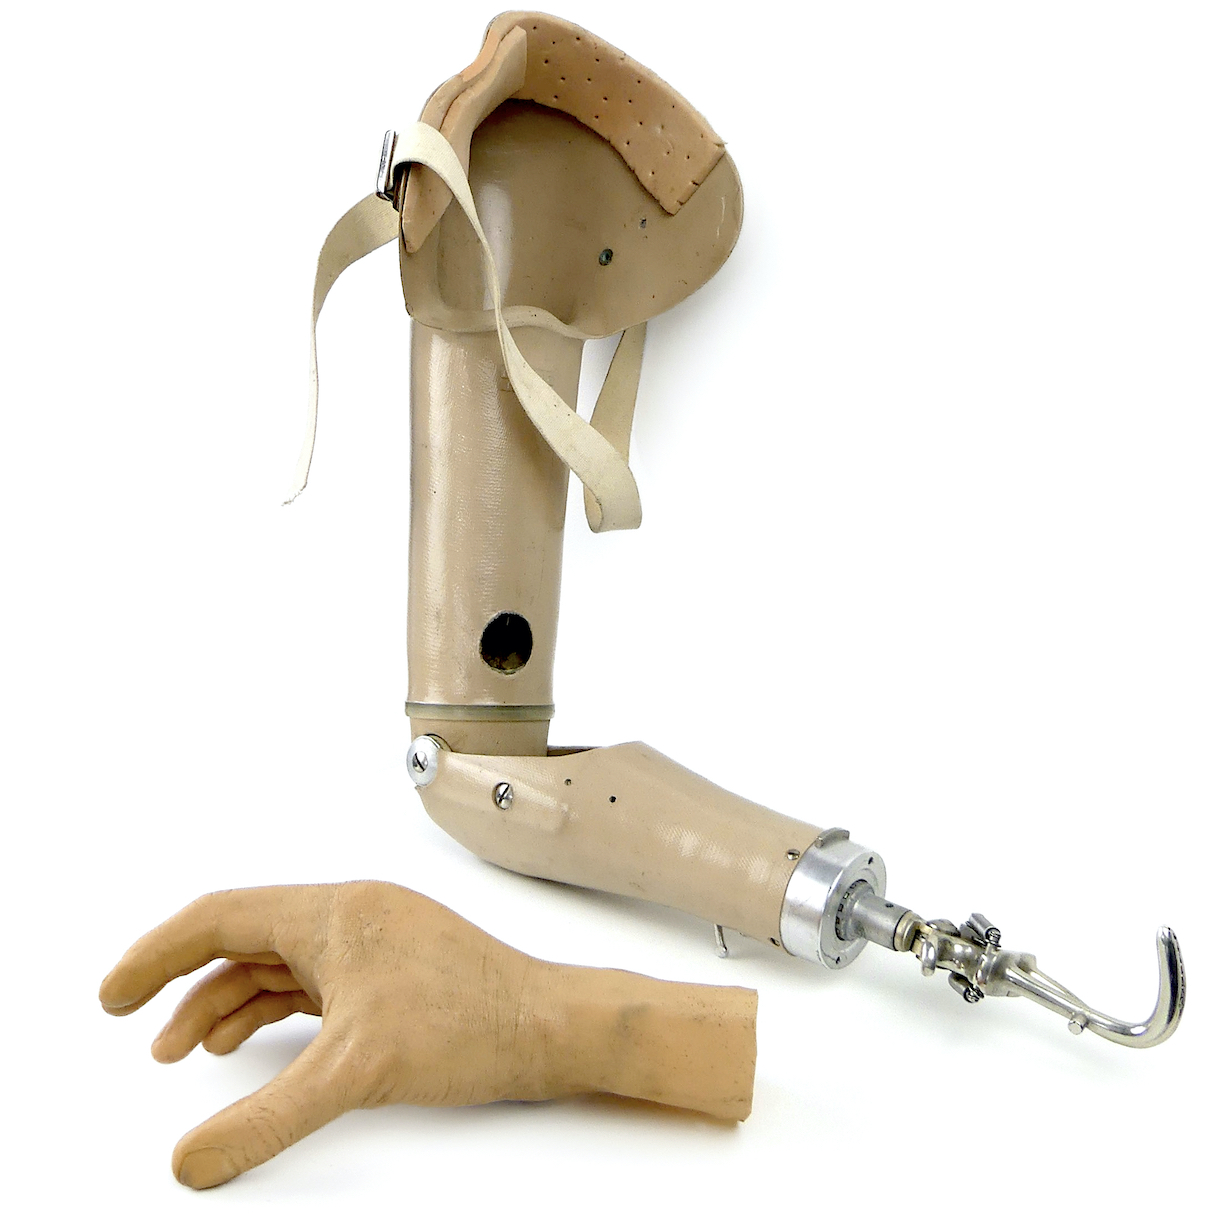 Prothèse de bras vintage avec pince mécanique et main en silicone